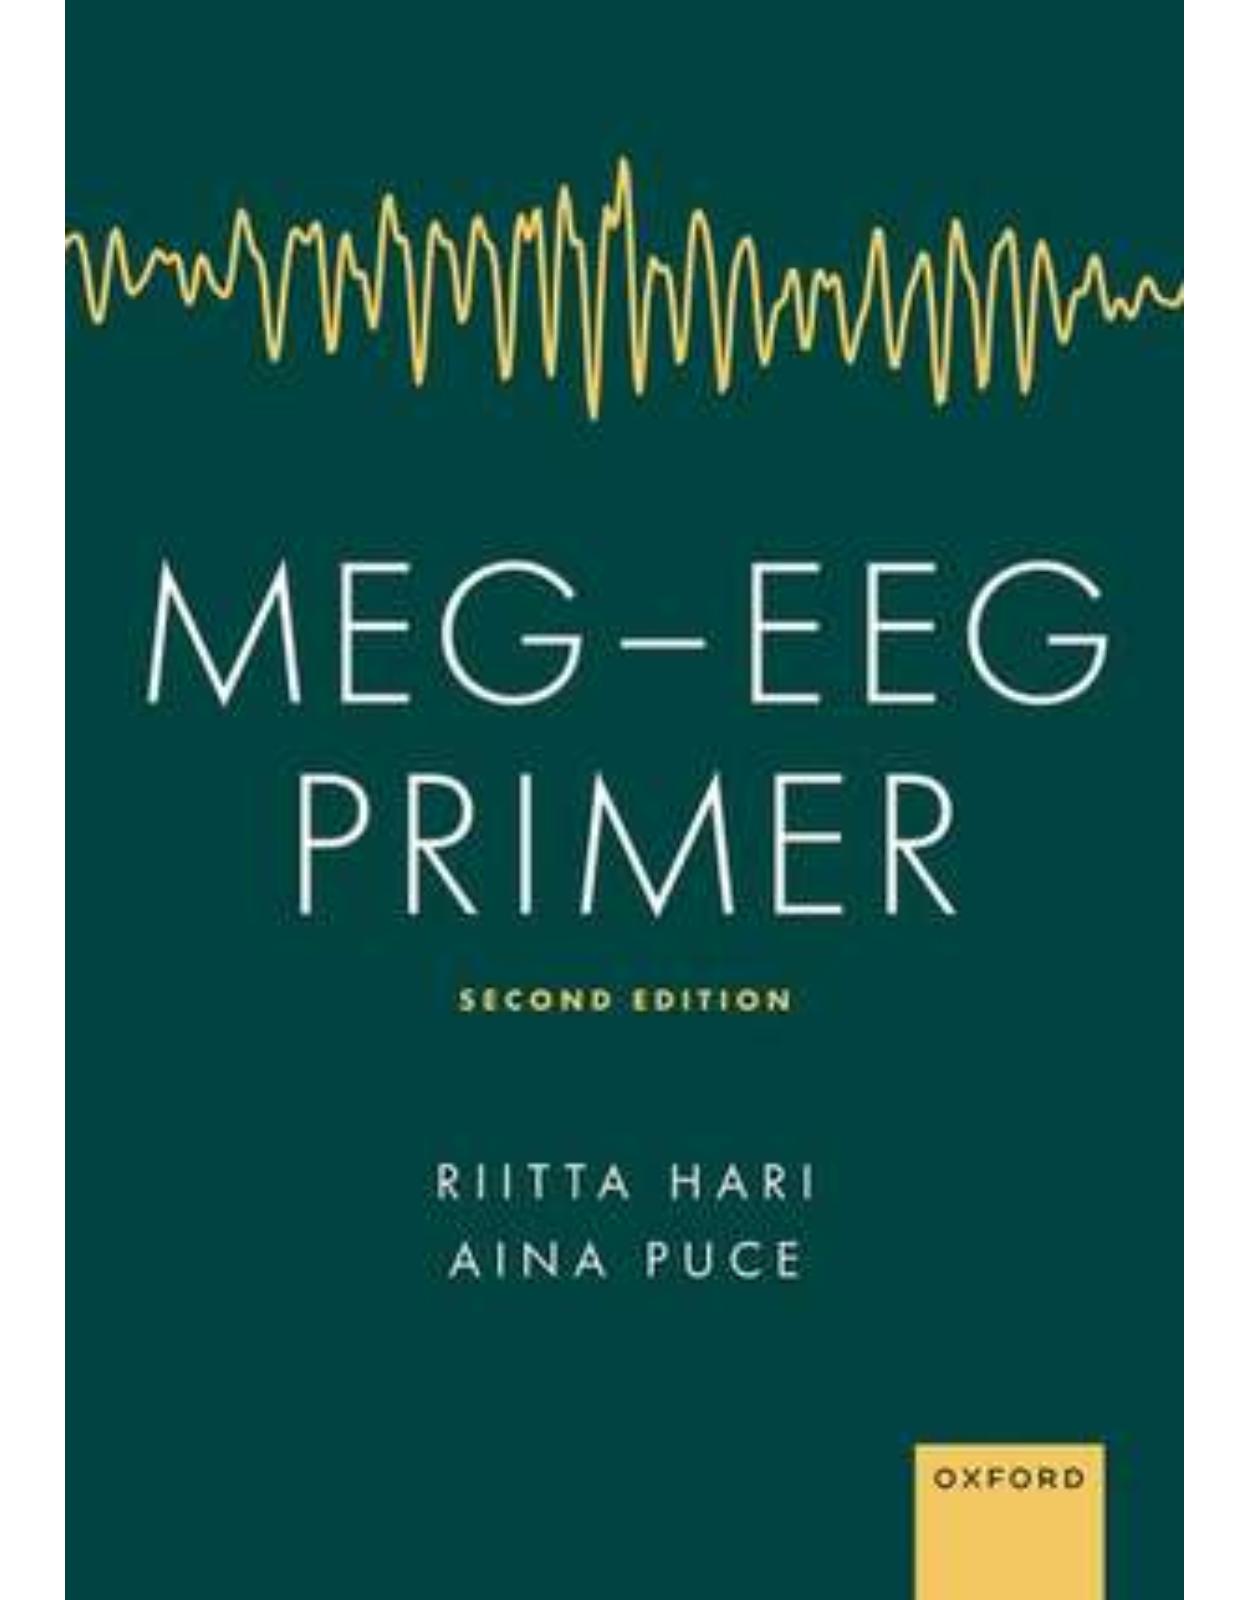 MEG - EEG Primer